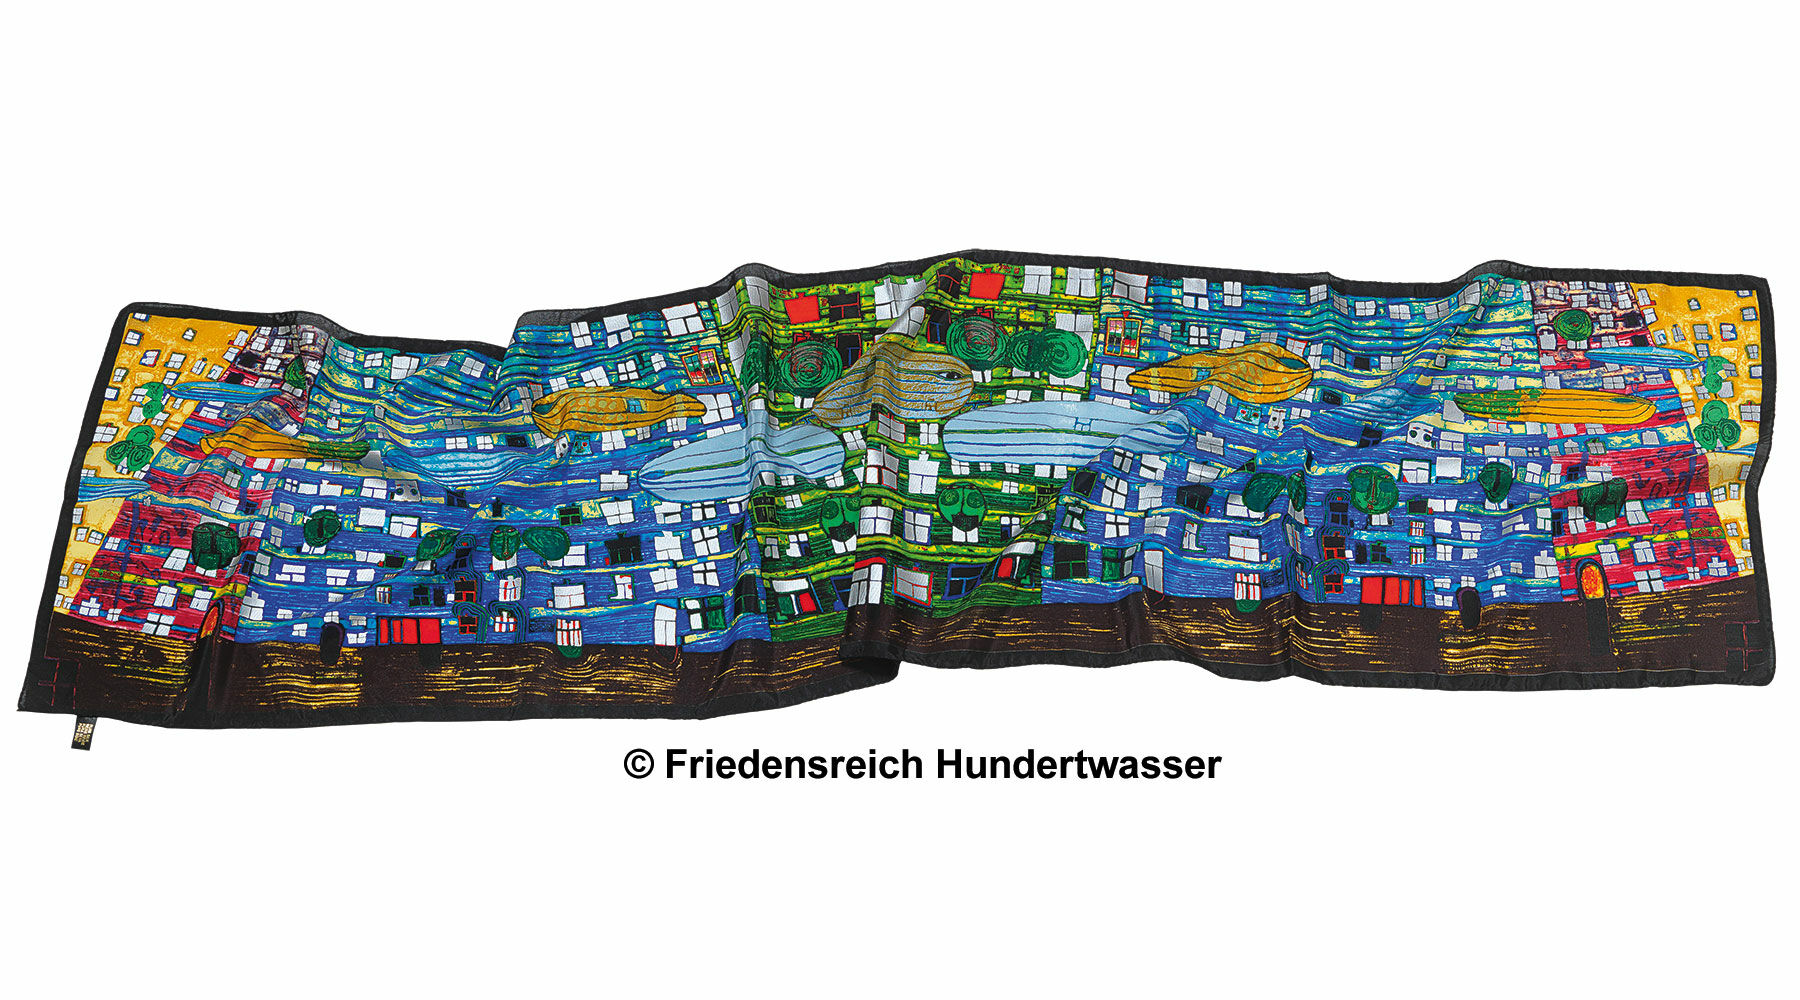 (777) Sjaal "Lied van de walvissen" von Friedensreich Hundertwasser